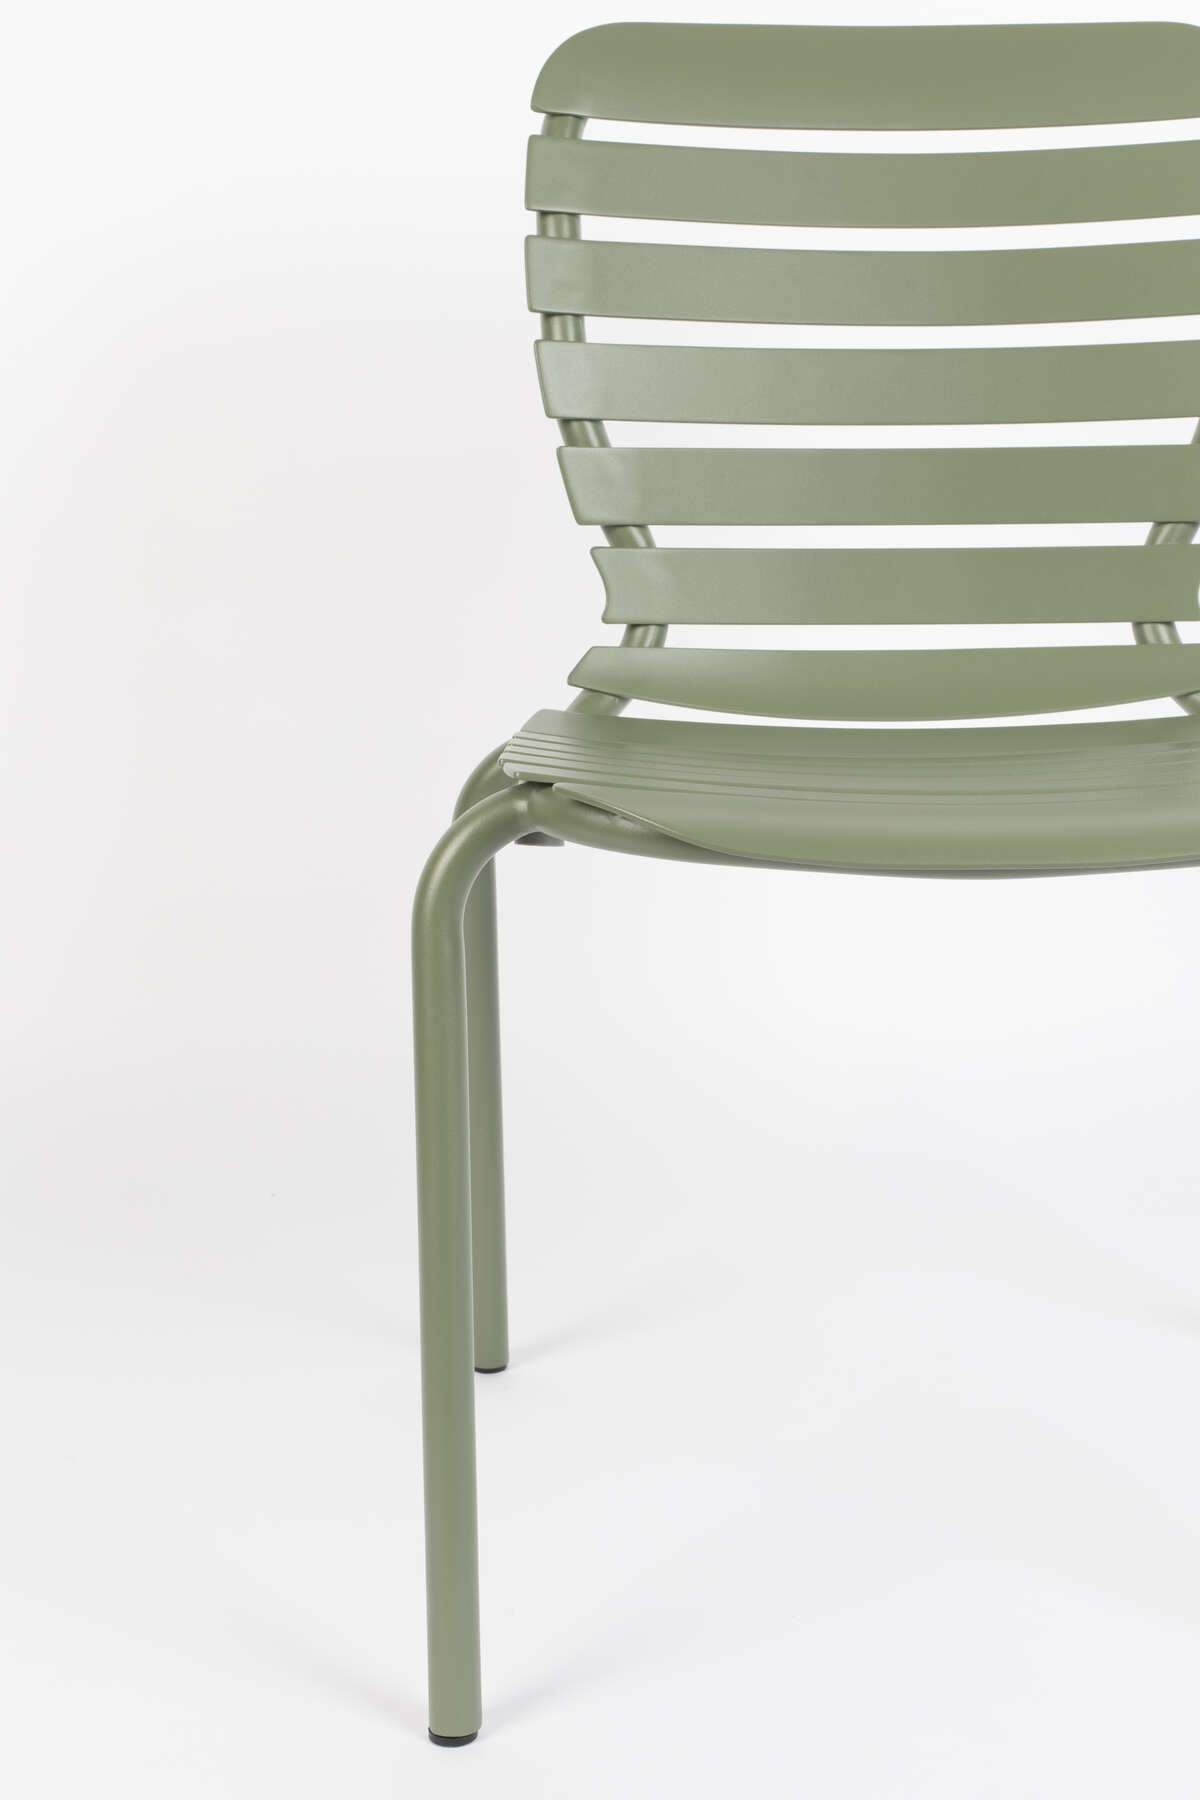 Garden chair VONDEL green, Zuiver, Eye on Design